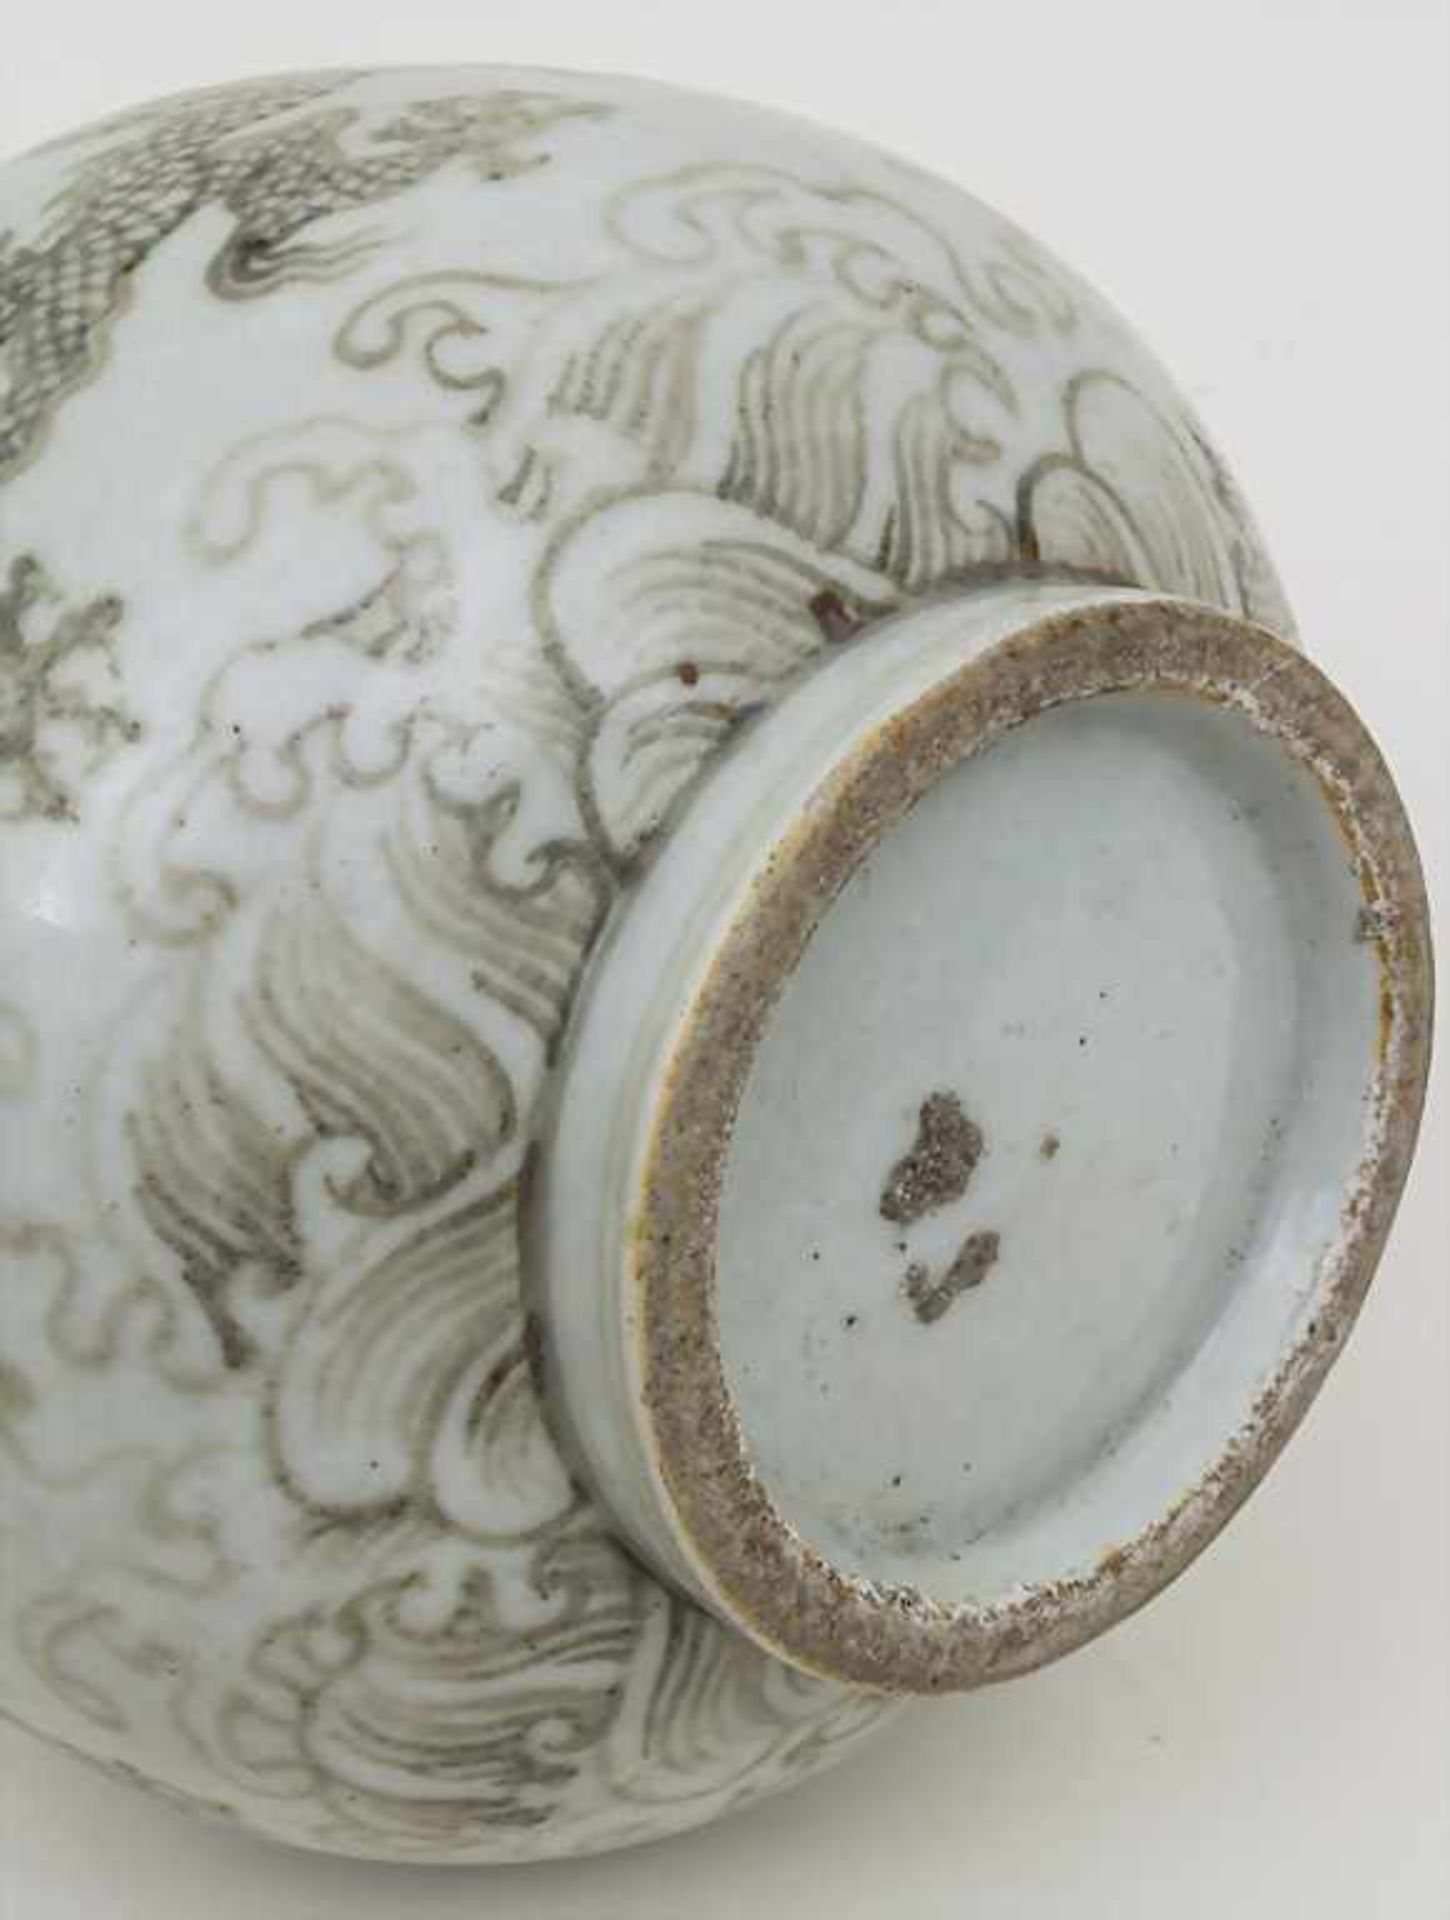 Drachenvase / A dragon vase, China, 19. Jh. Material: Porzellan, glasiert und farbig staffiert, - Bild 2 aus 2